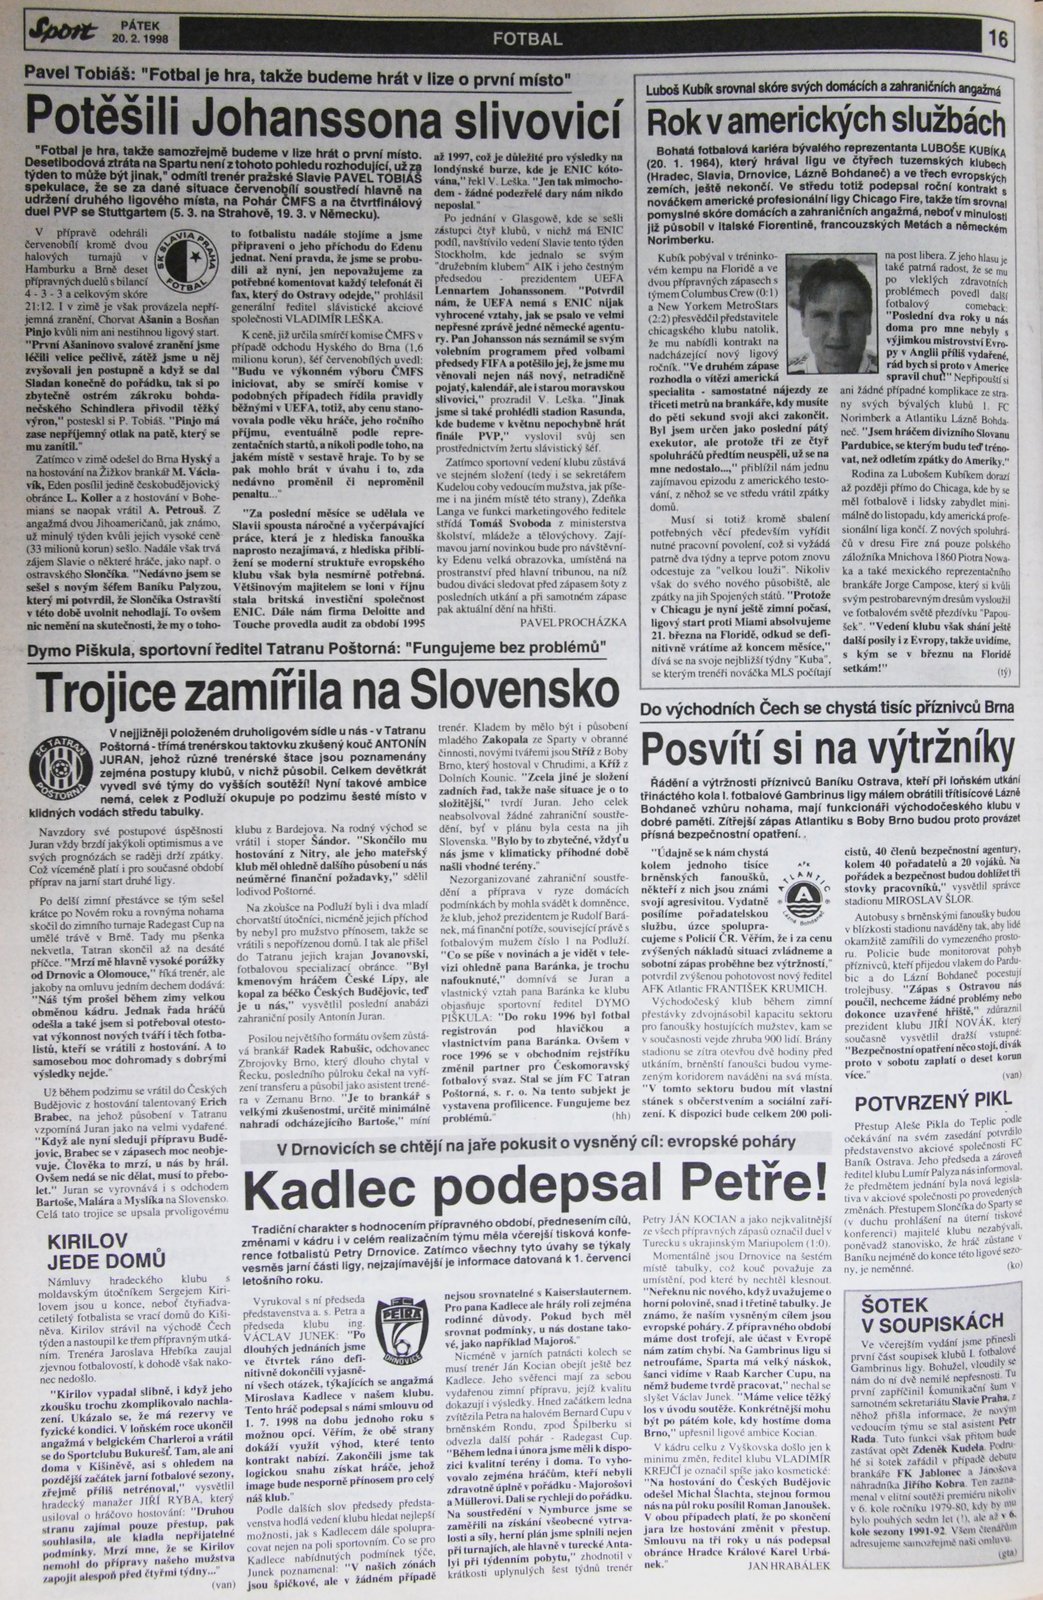 20. 2. 1998 - Strana 16